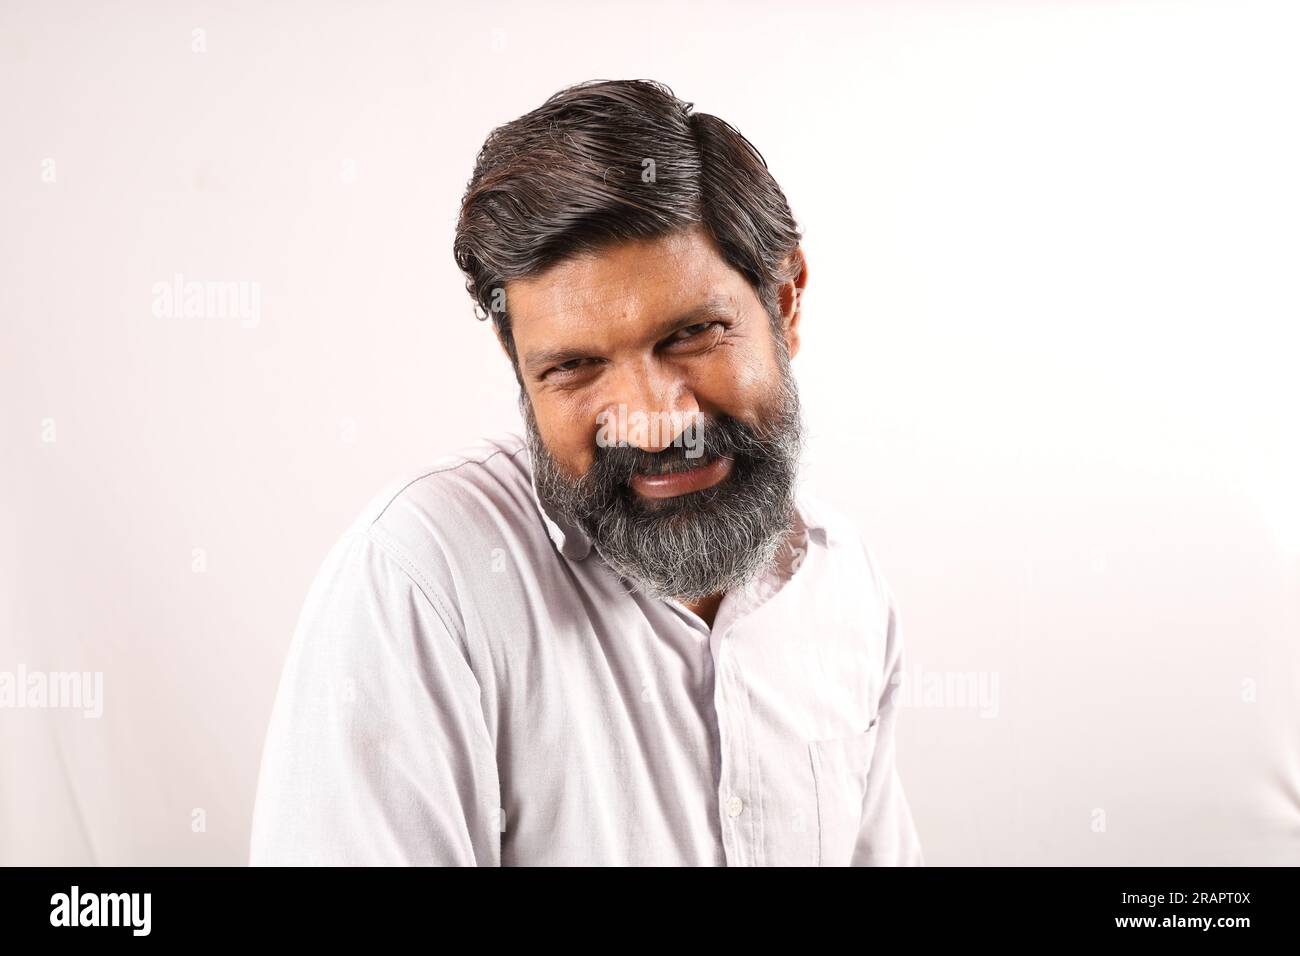 Portrait d'un barbu indien portant une chemise. Expressions funky tristes et déprimées pleines de tristesse et de regrets. Banque D'Images